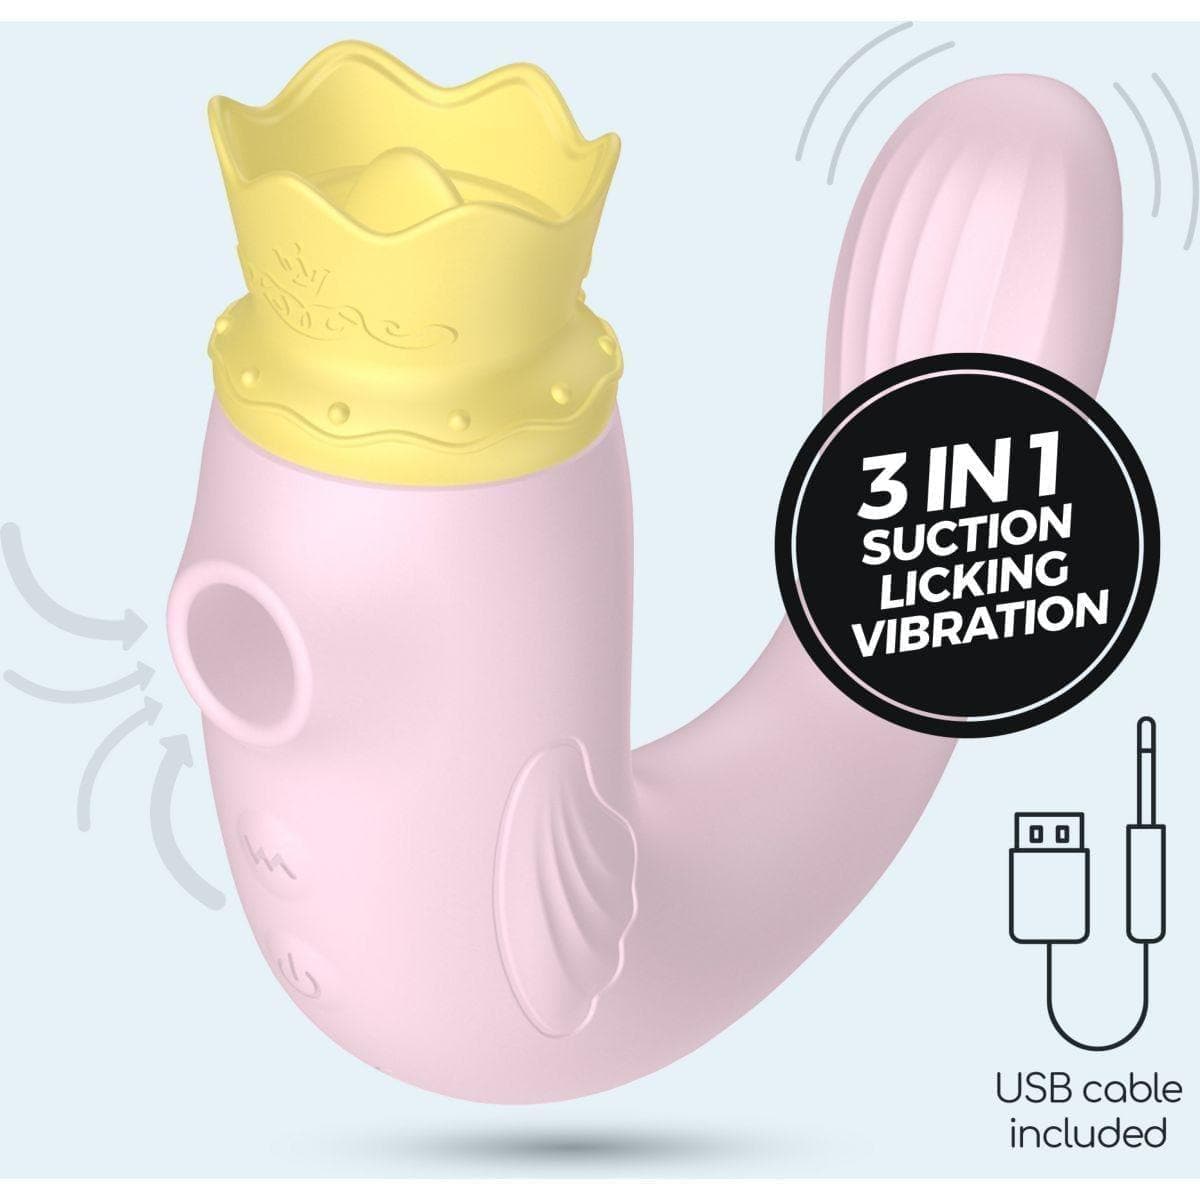 Estimulador Hiri Rosa, 3 em 1, Sucção, Oral, Penetração - Pérola SexShop